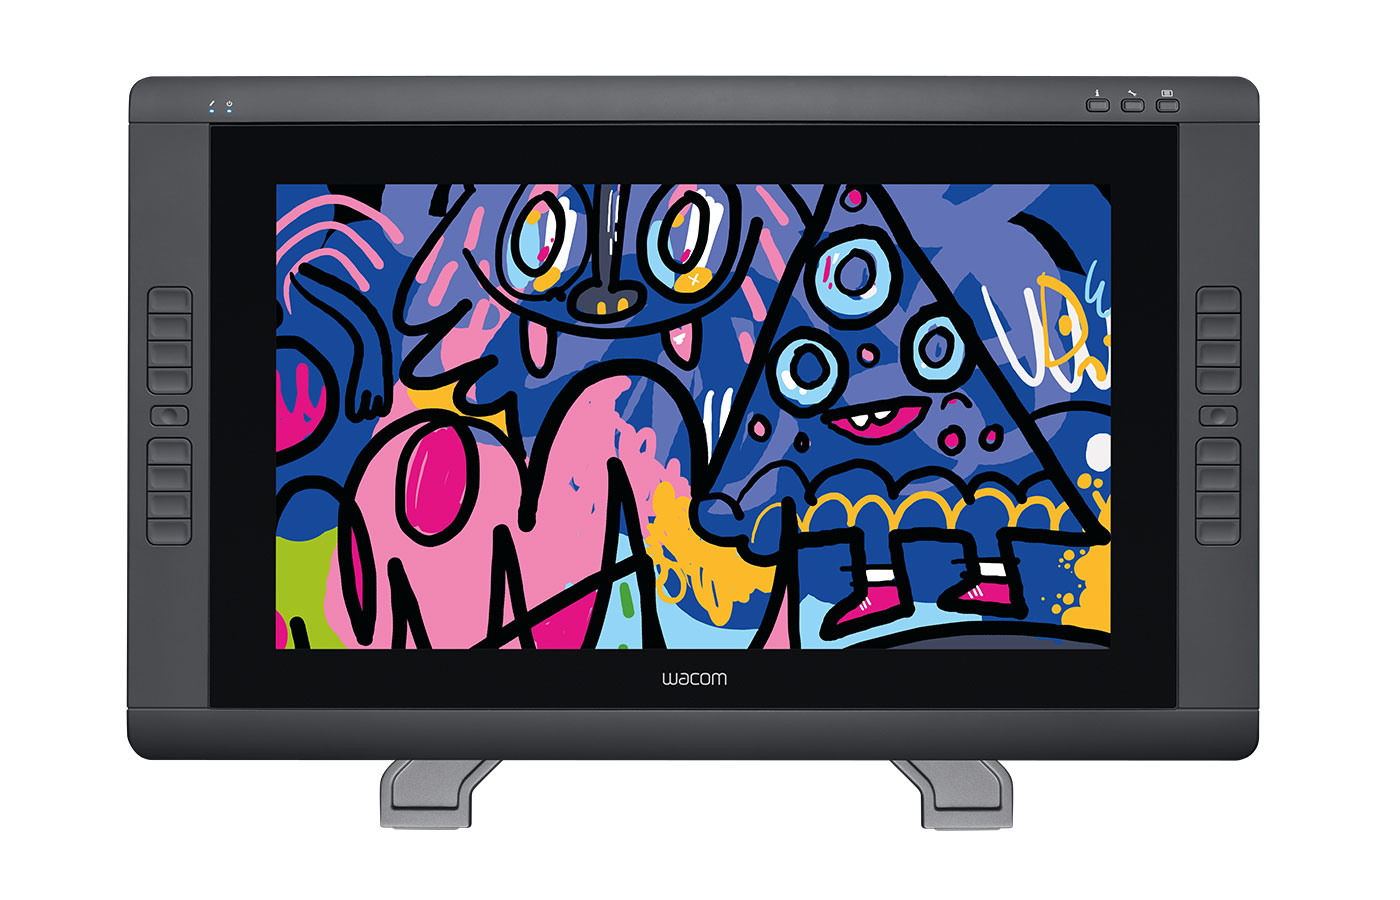 Crea, diseña y digitaliza todo tipo de creaciones gráficas gracias a los monitores interactivos de Wacom - México